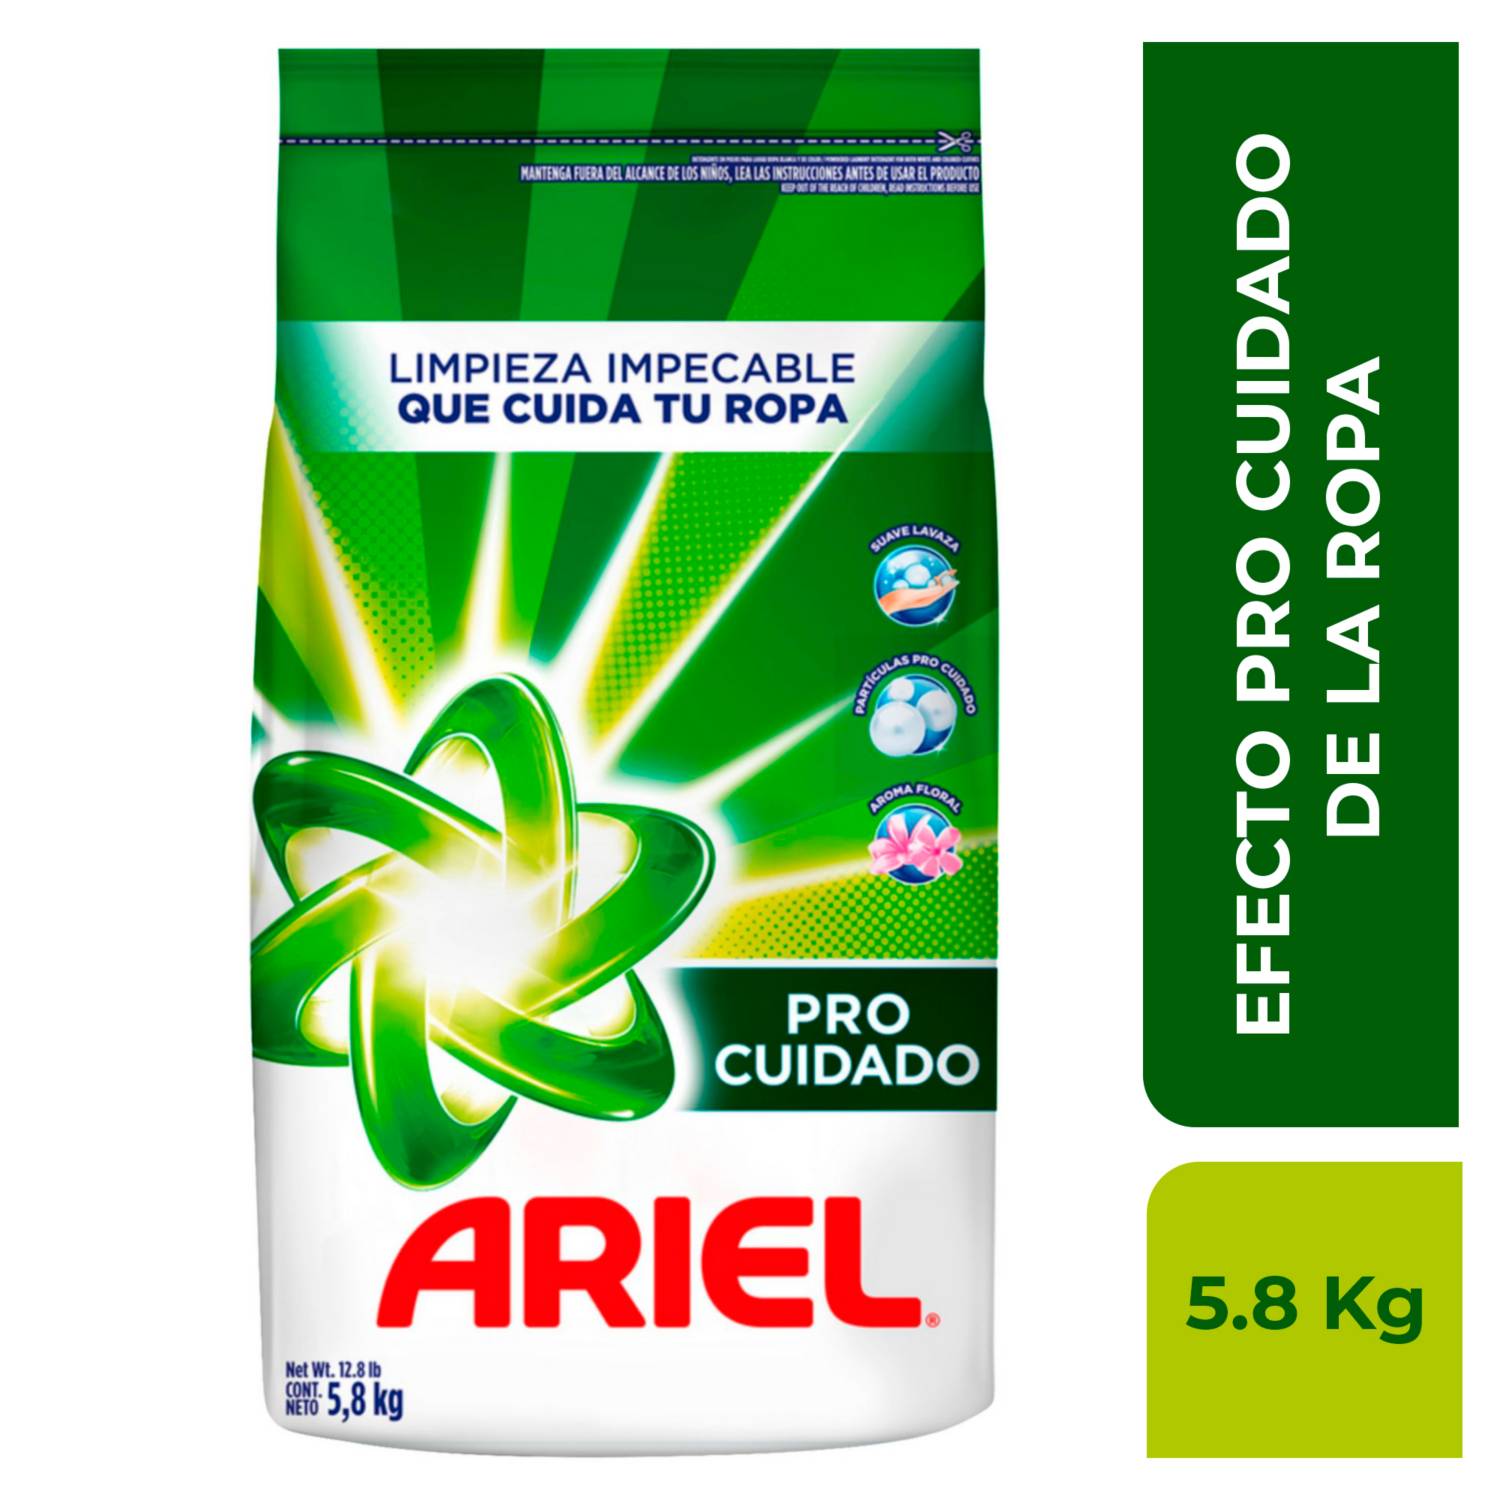 Detergente en Polvo Ariel Pro Cuidado 5.8 kg.